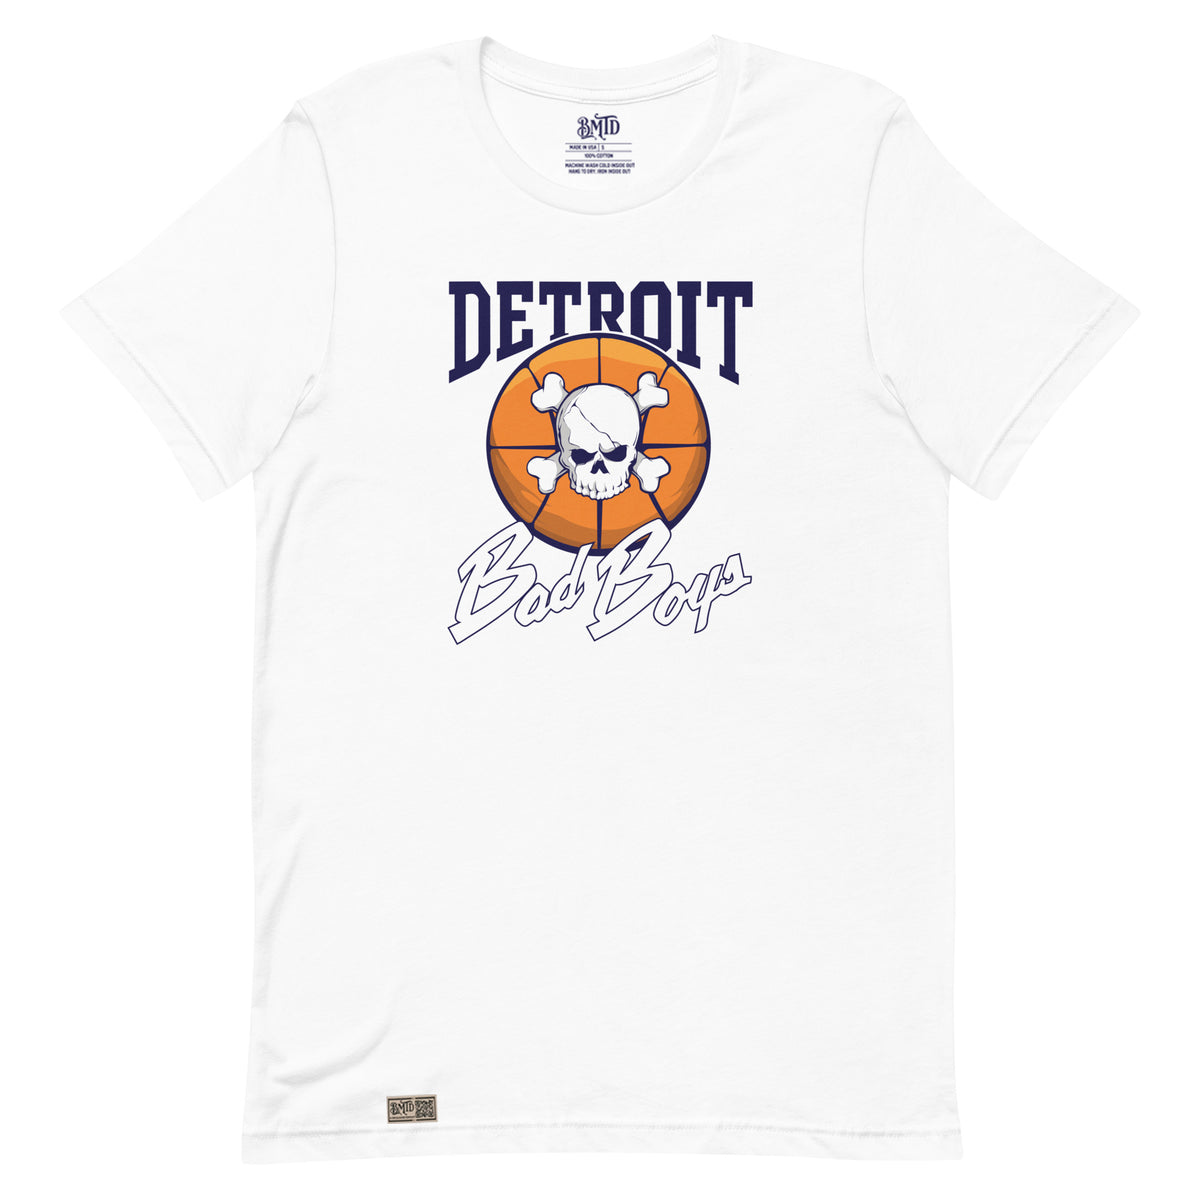 Detroit Bad Boys T-shirt